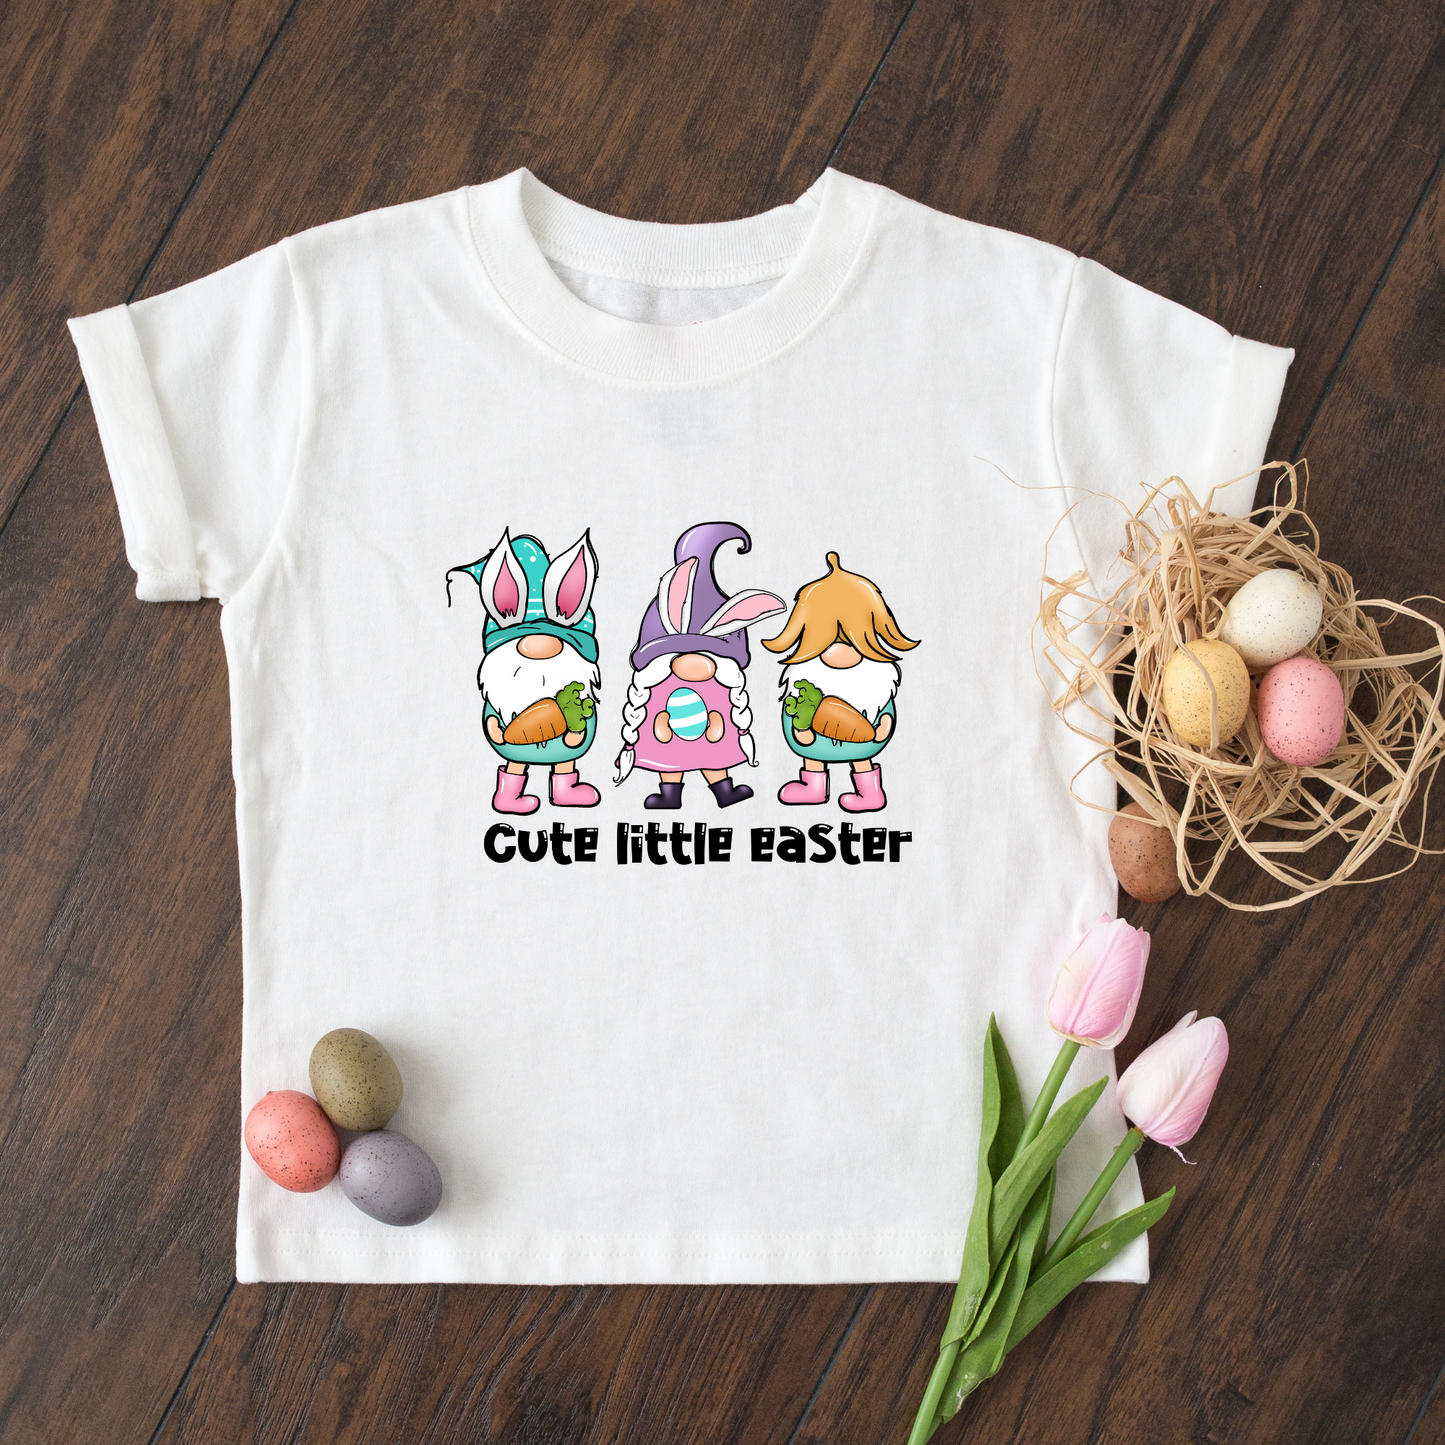 Cute little Easter - Kids